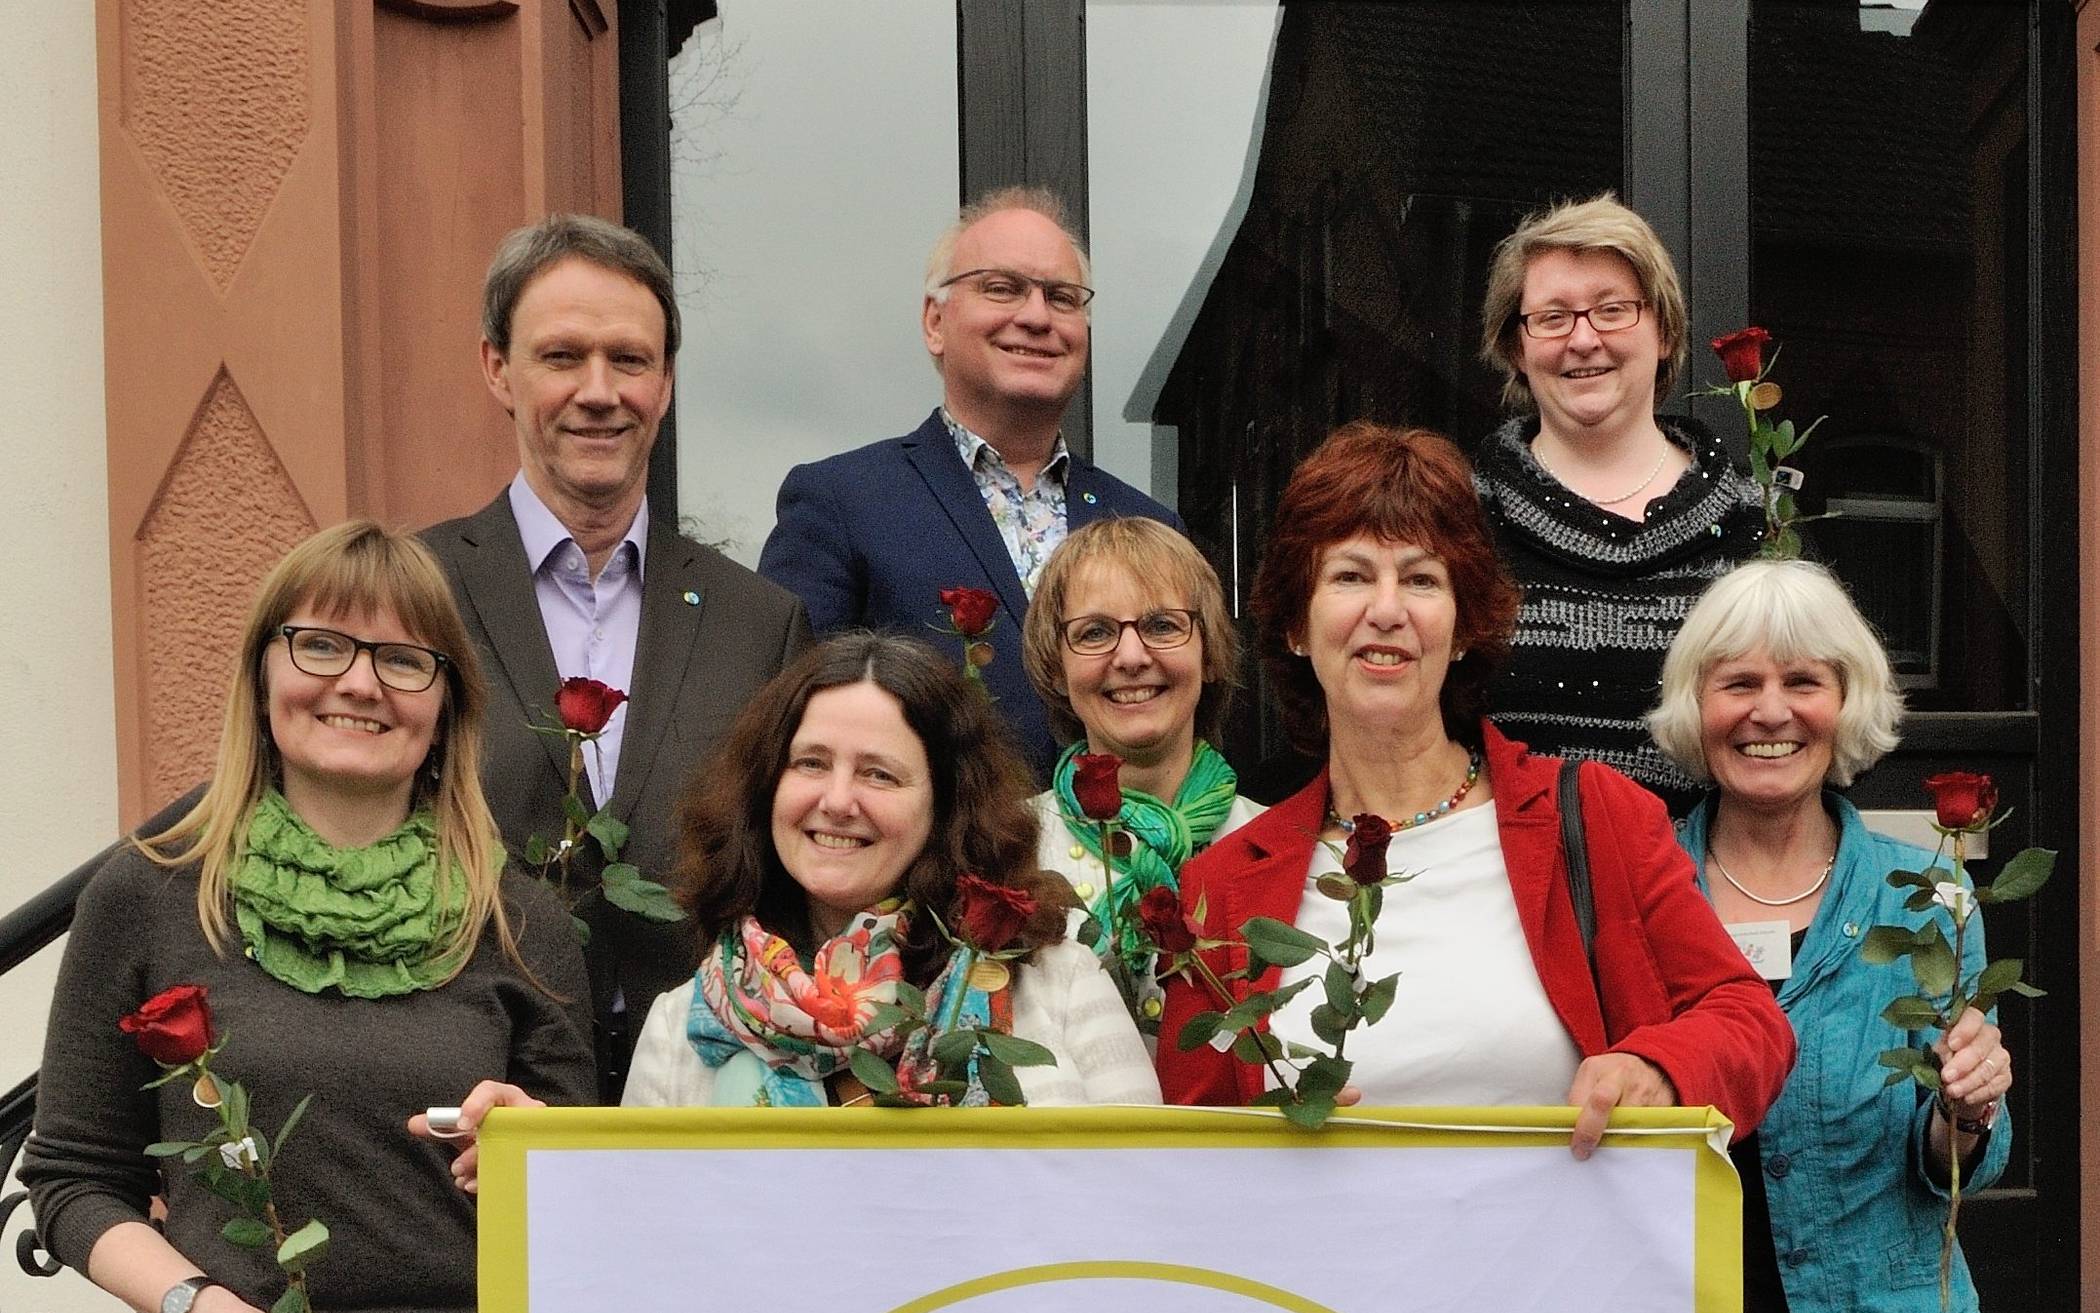  Auf Initiative von Bündnis 90/Die Grünen ist Erkrath seit 2016 Fair-Trade-Town. Mitglieder der von Rat und Verwaltung gebildeten Steuerungsgruppe freuten sich damals über die Auszeichnung.  